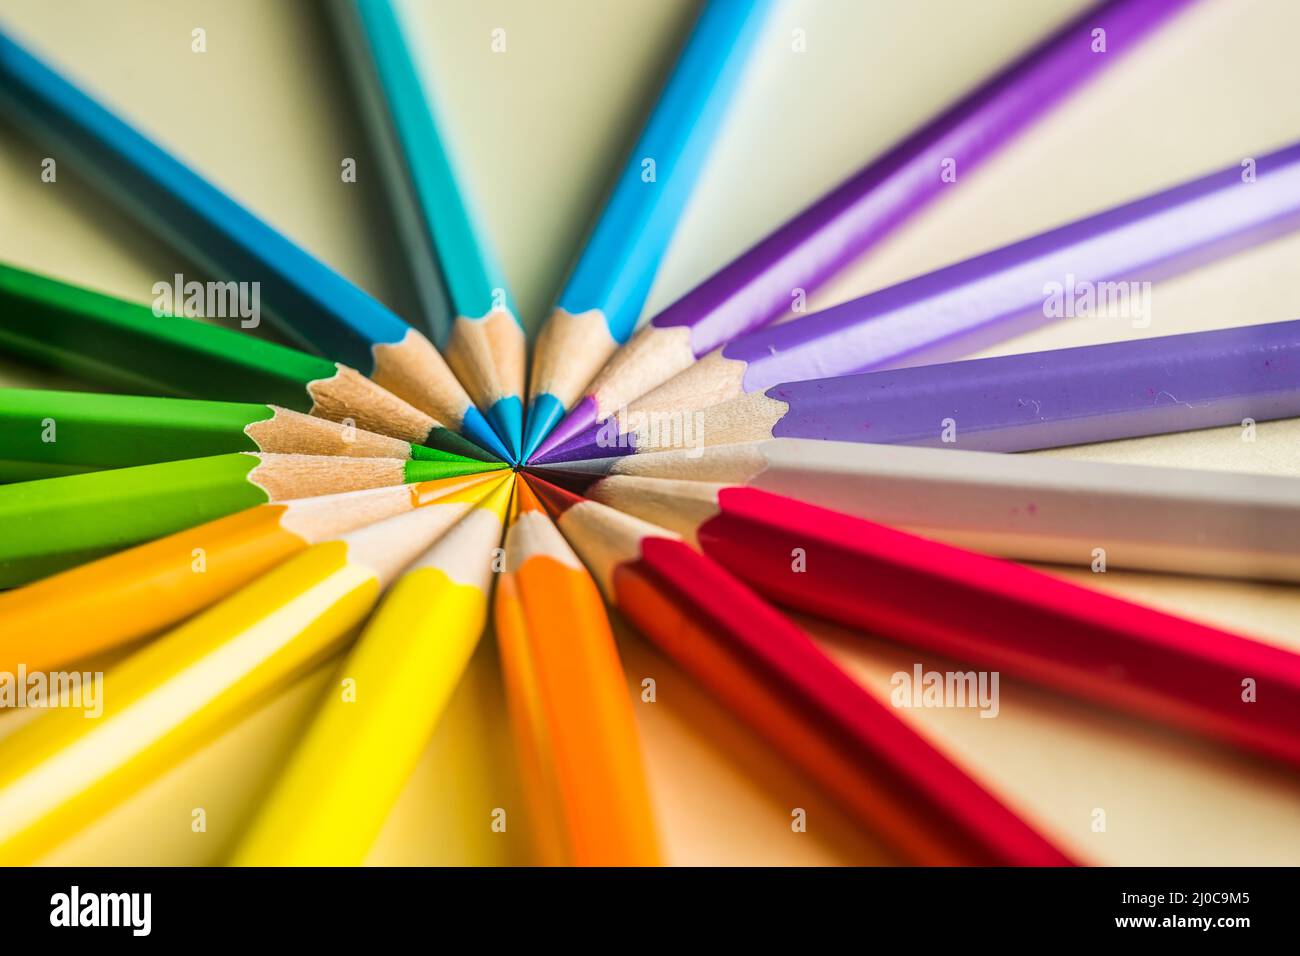 Business concept - vue de dessus du cercle de crayon de couleur sur fond de papier jaune Banque D'Images